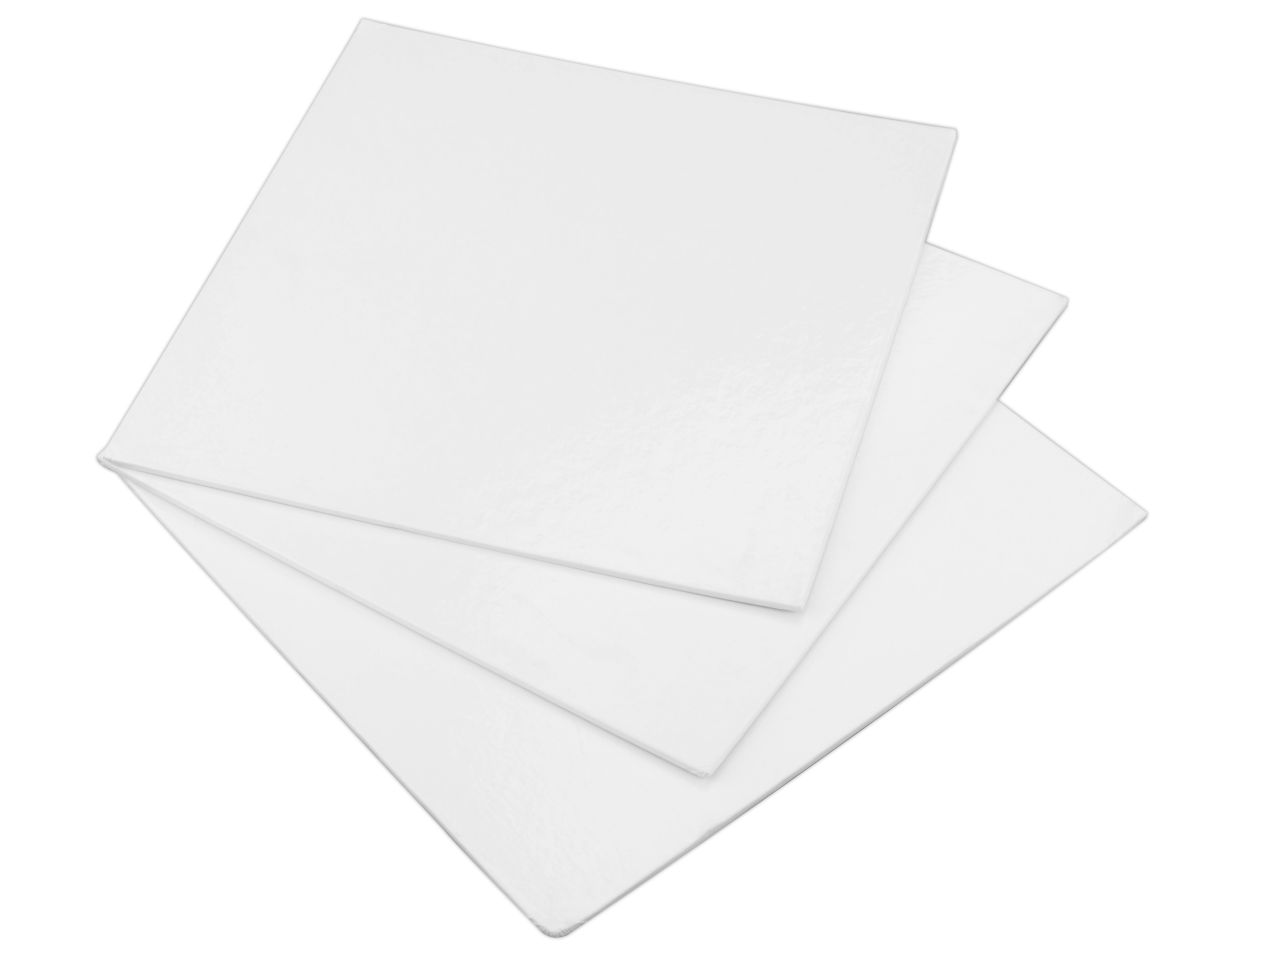 Cakecard: Quadrat in Weiß, 3 Stück à 20 cm, 3 m